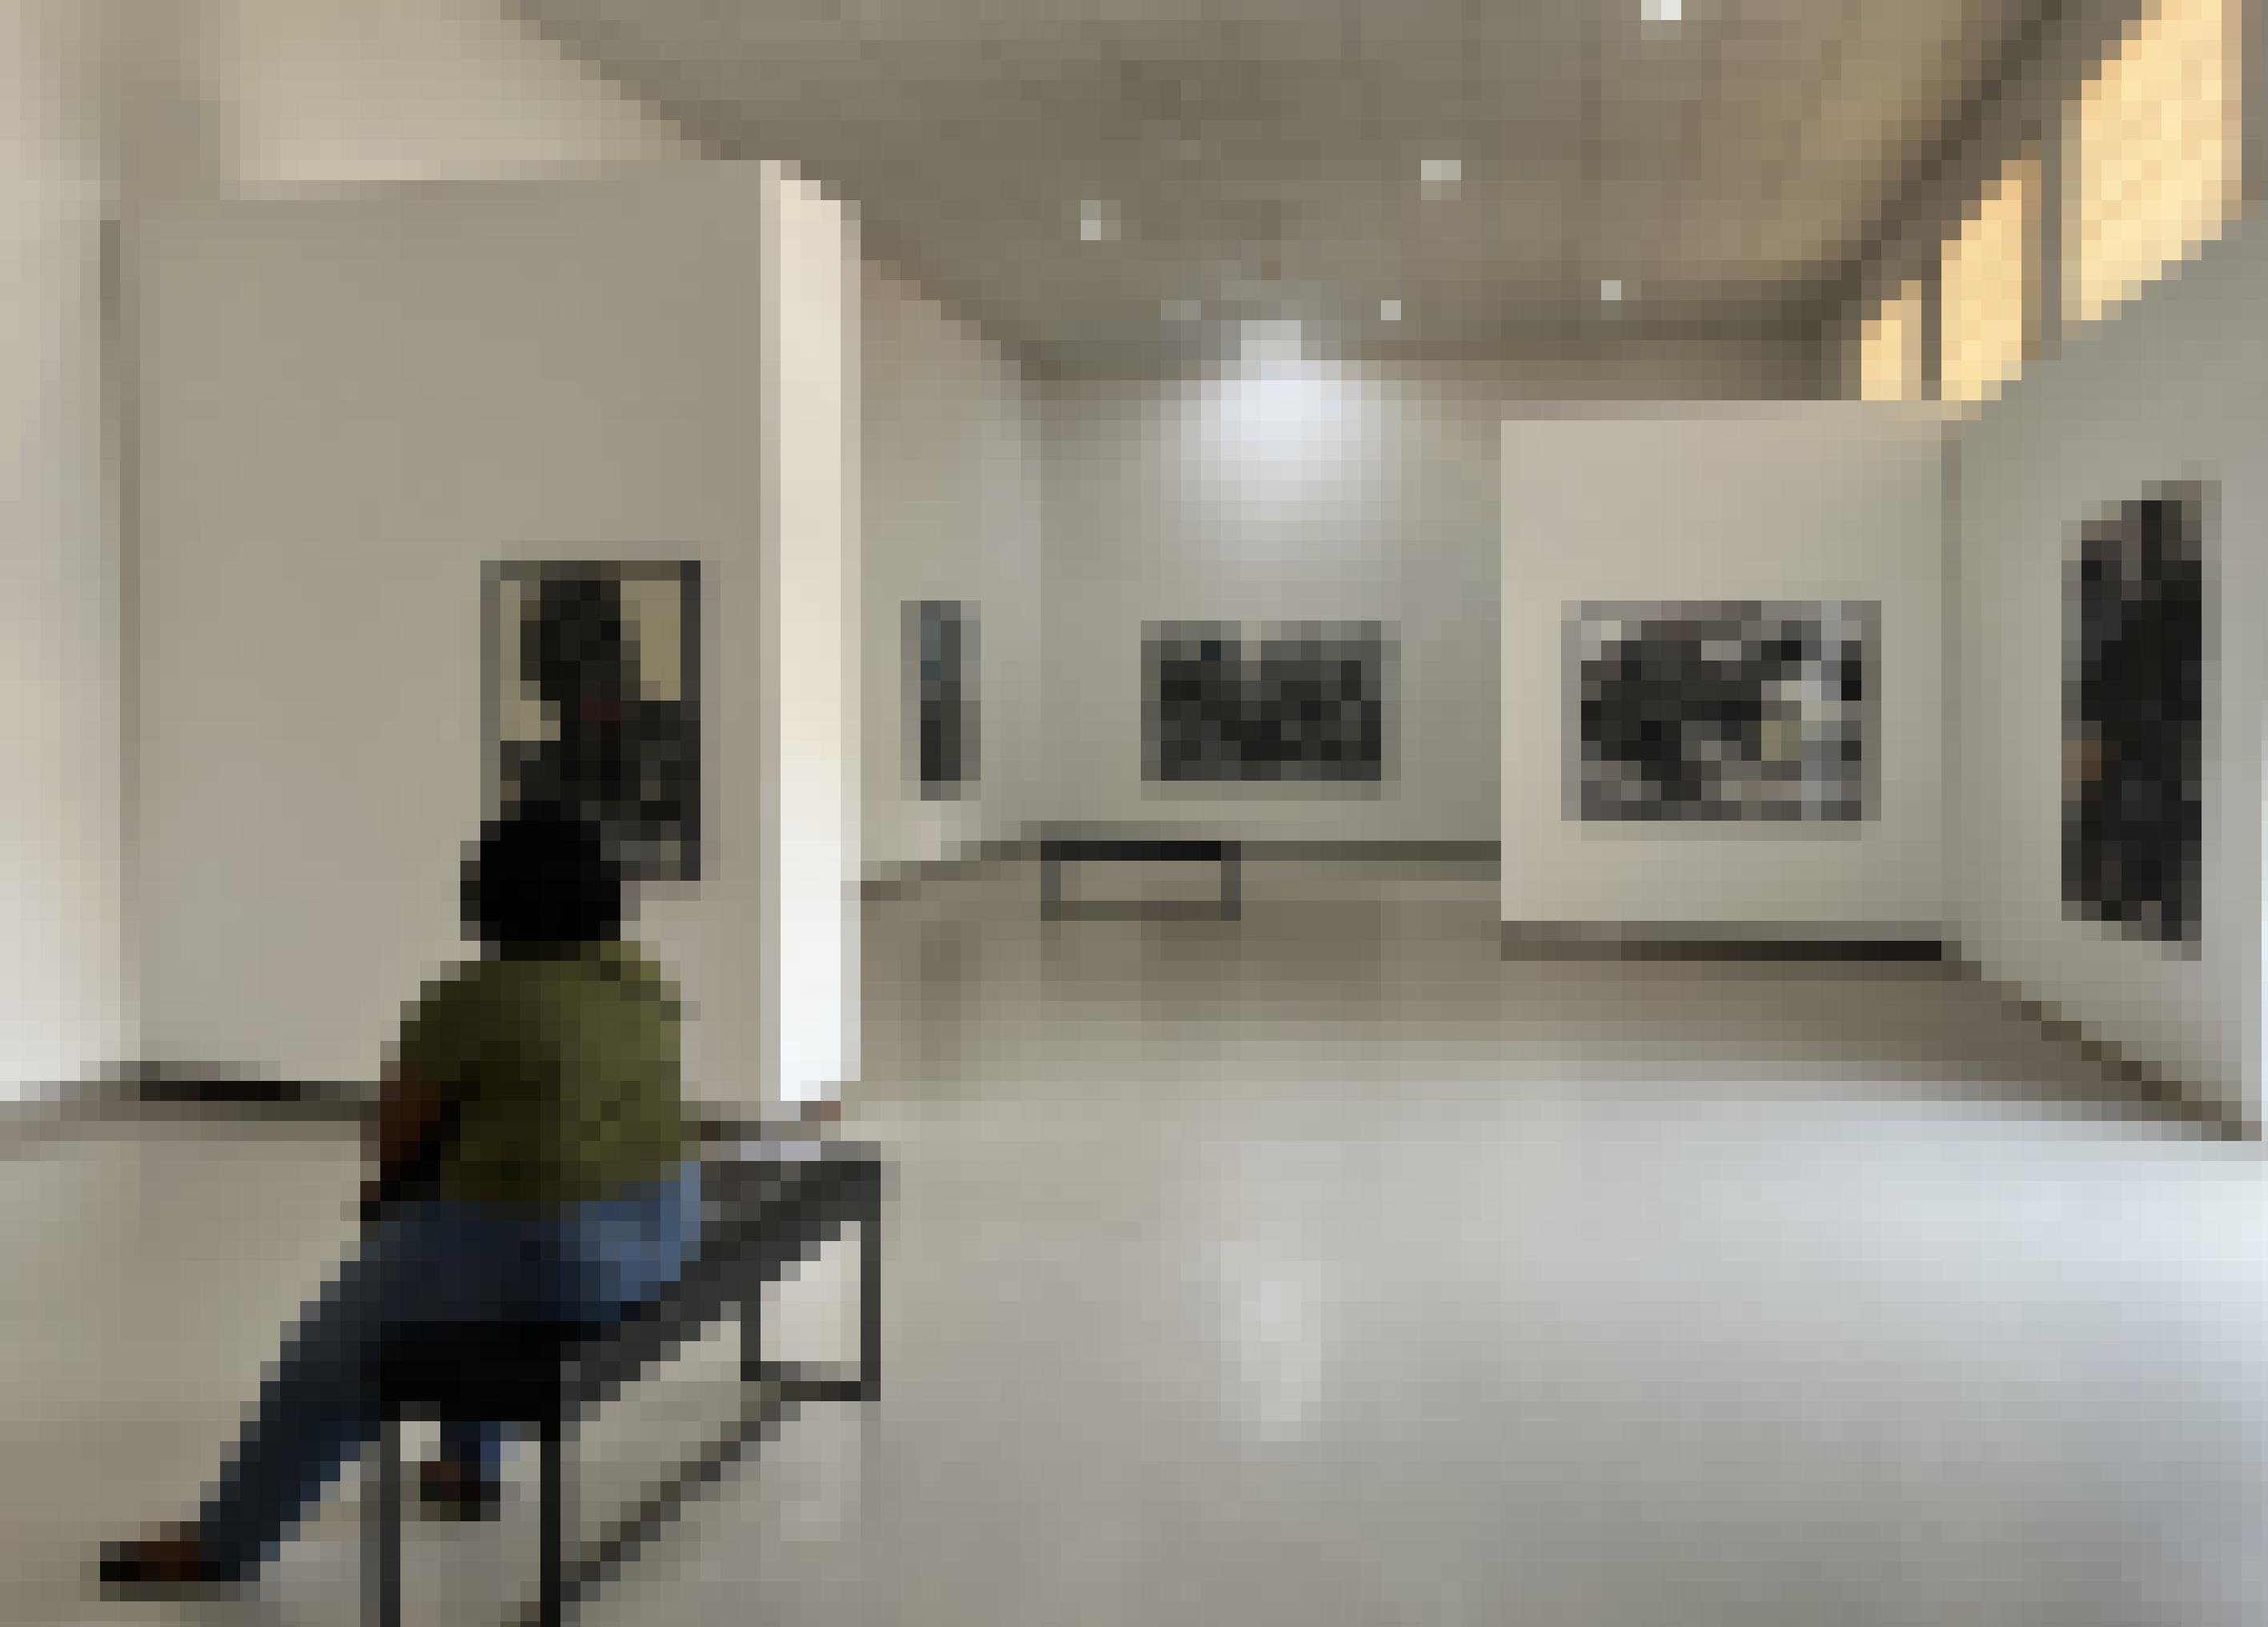 Eine Frau sitzt auf einer Bank im Ausstellungsraum der Galerie. An den Wänden hängen großformatige Bilder in schwarz-weiß.